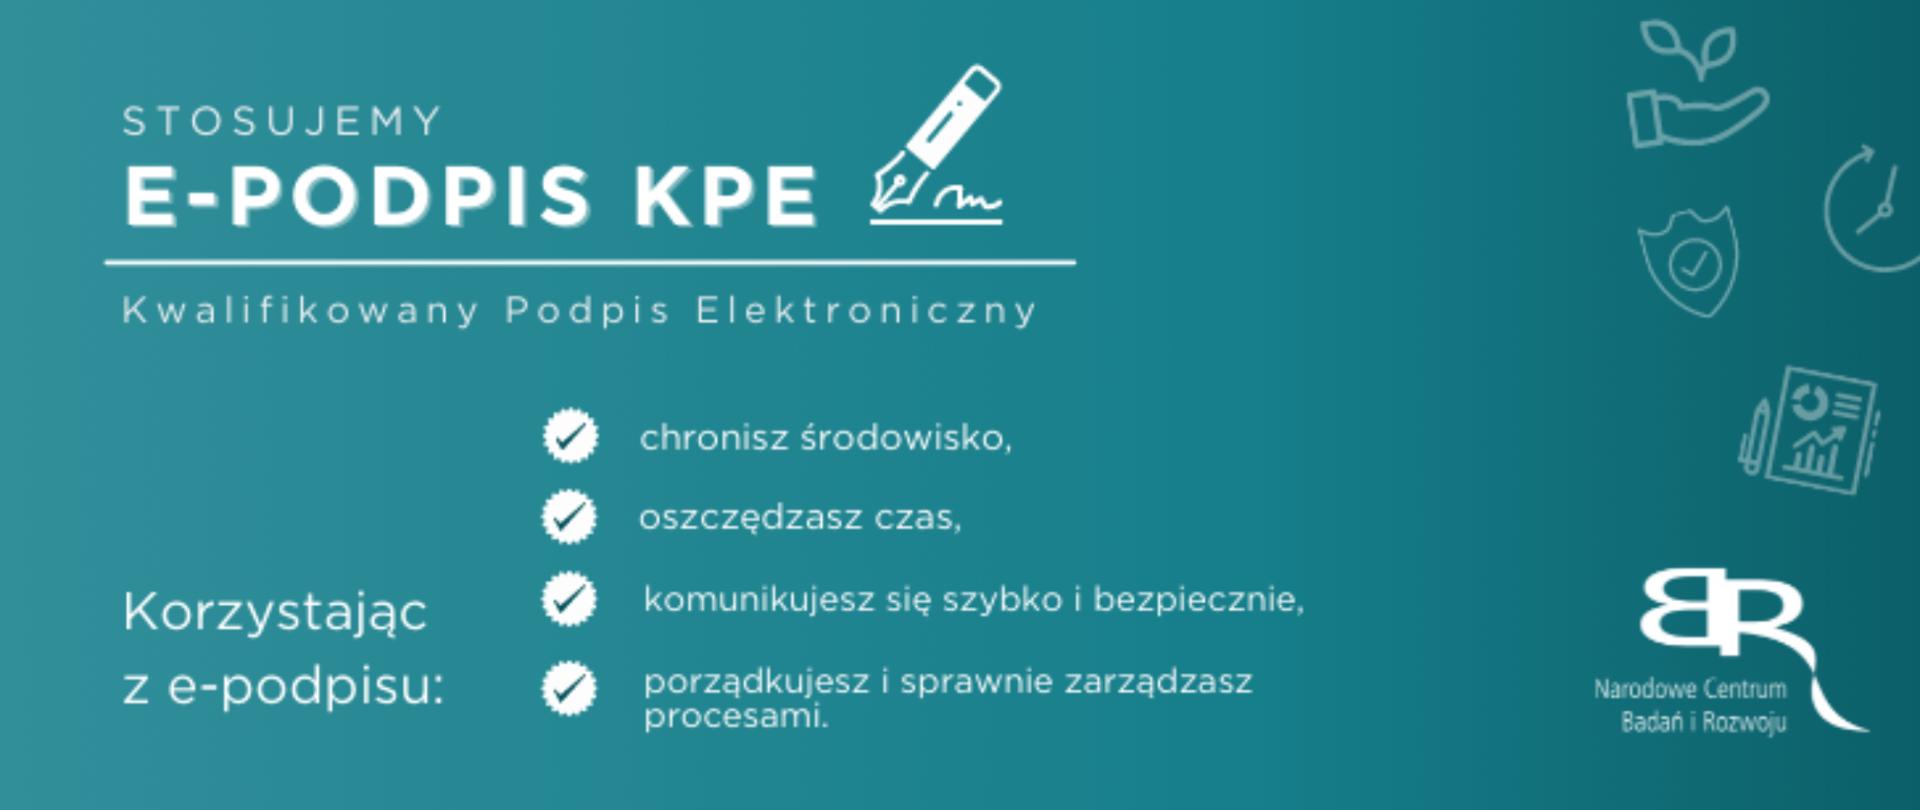 Stosujemy epodpis KPE (Kwalifikowany Podpis Elektroniczny)! Narodowe Centrum Badań i Rozwoju